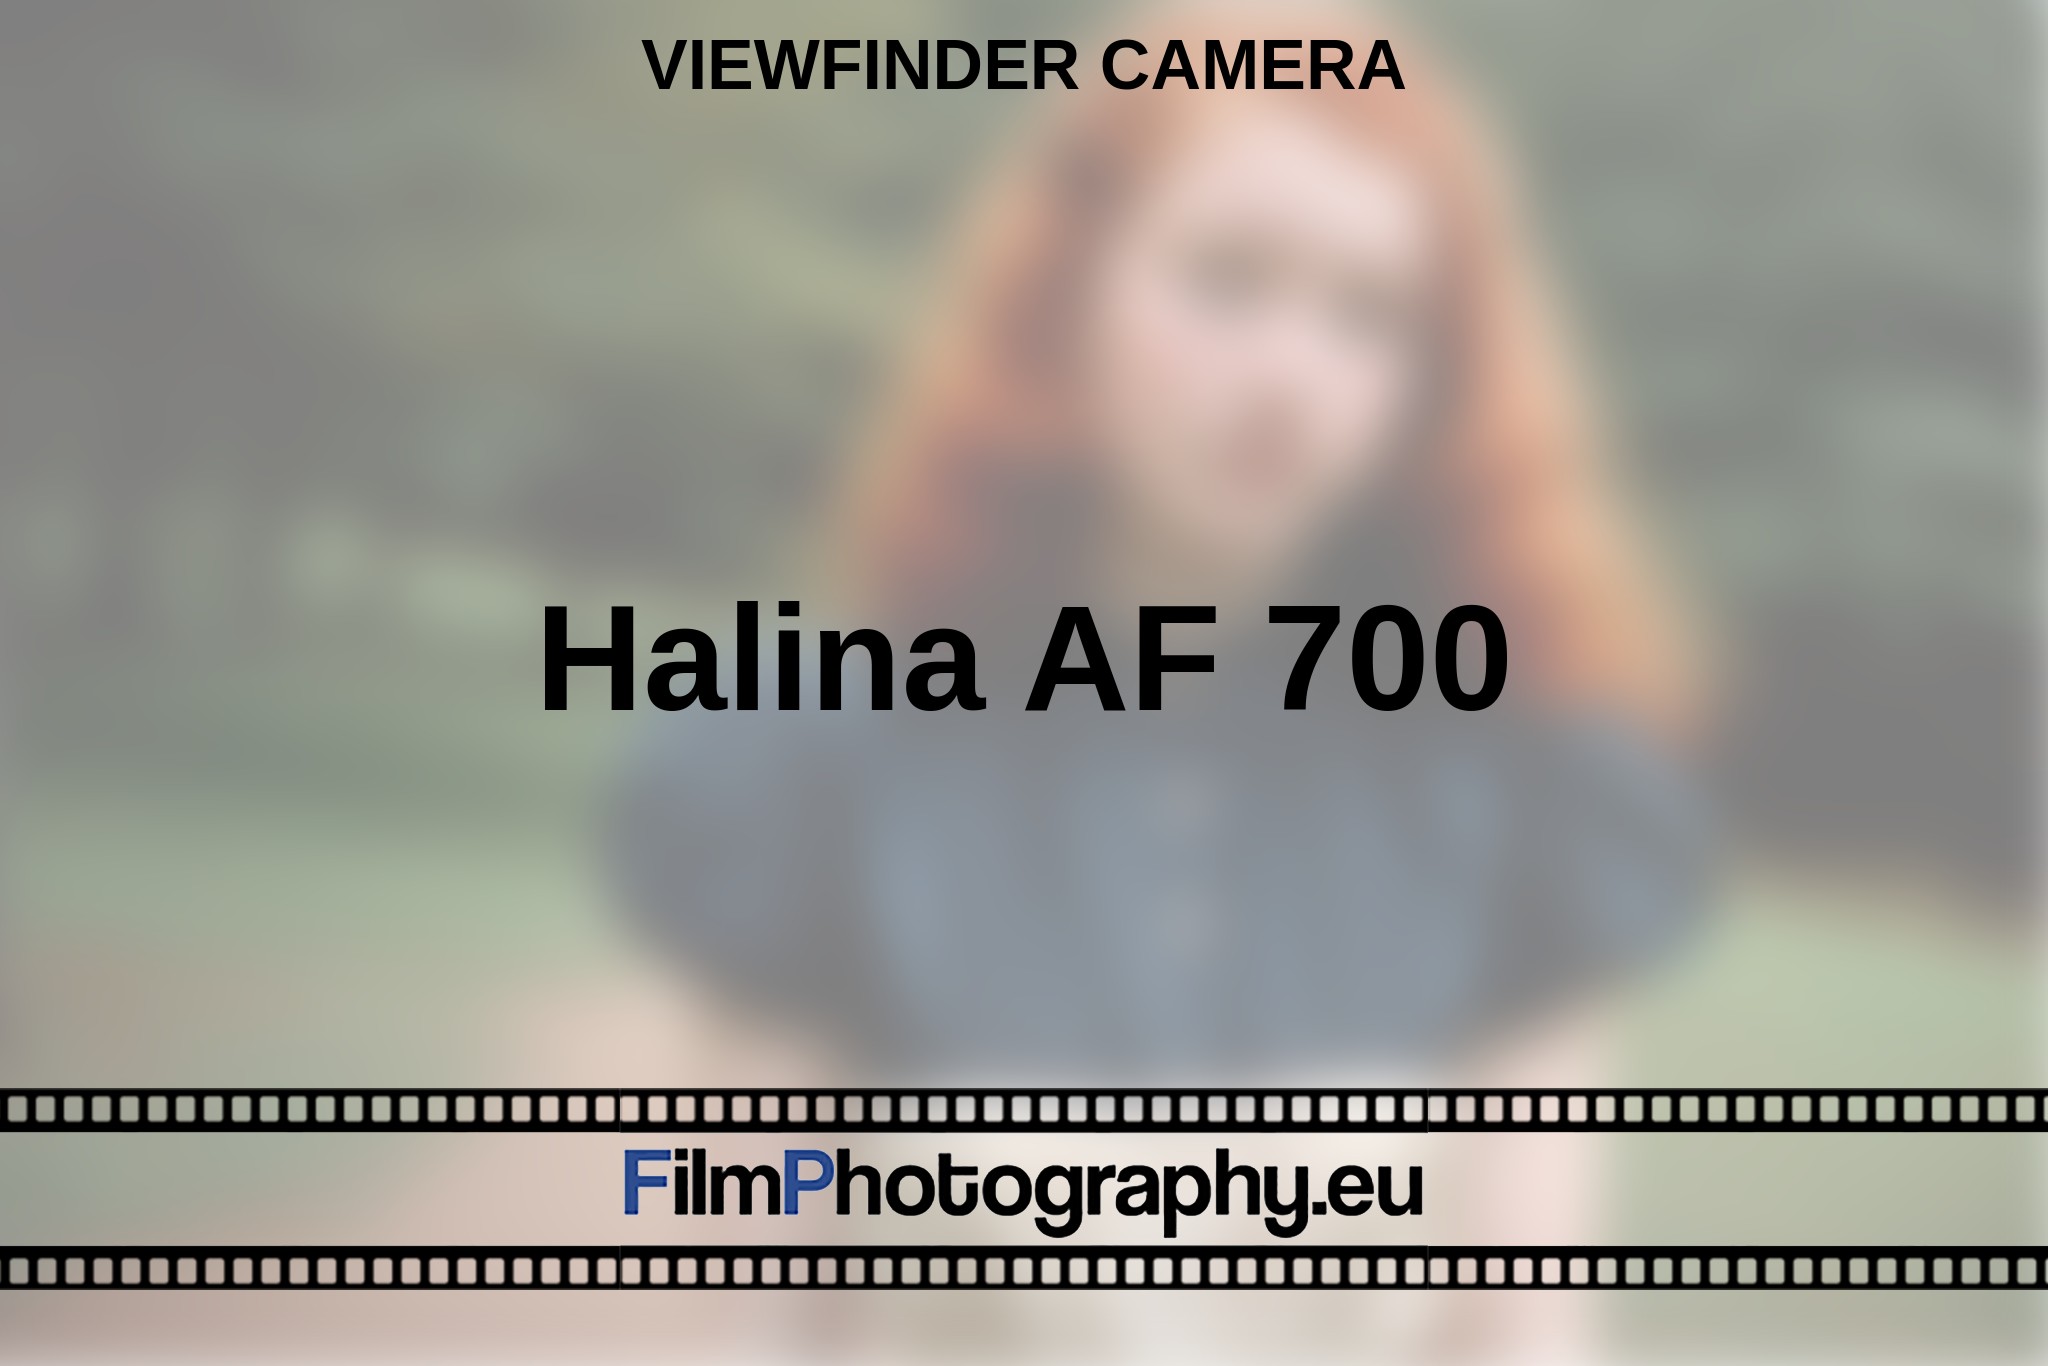 halina-af-700-viewfinder-camera-en-bnv.jpg